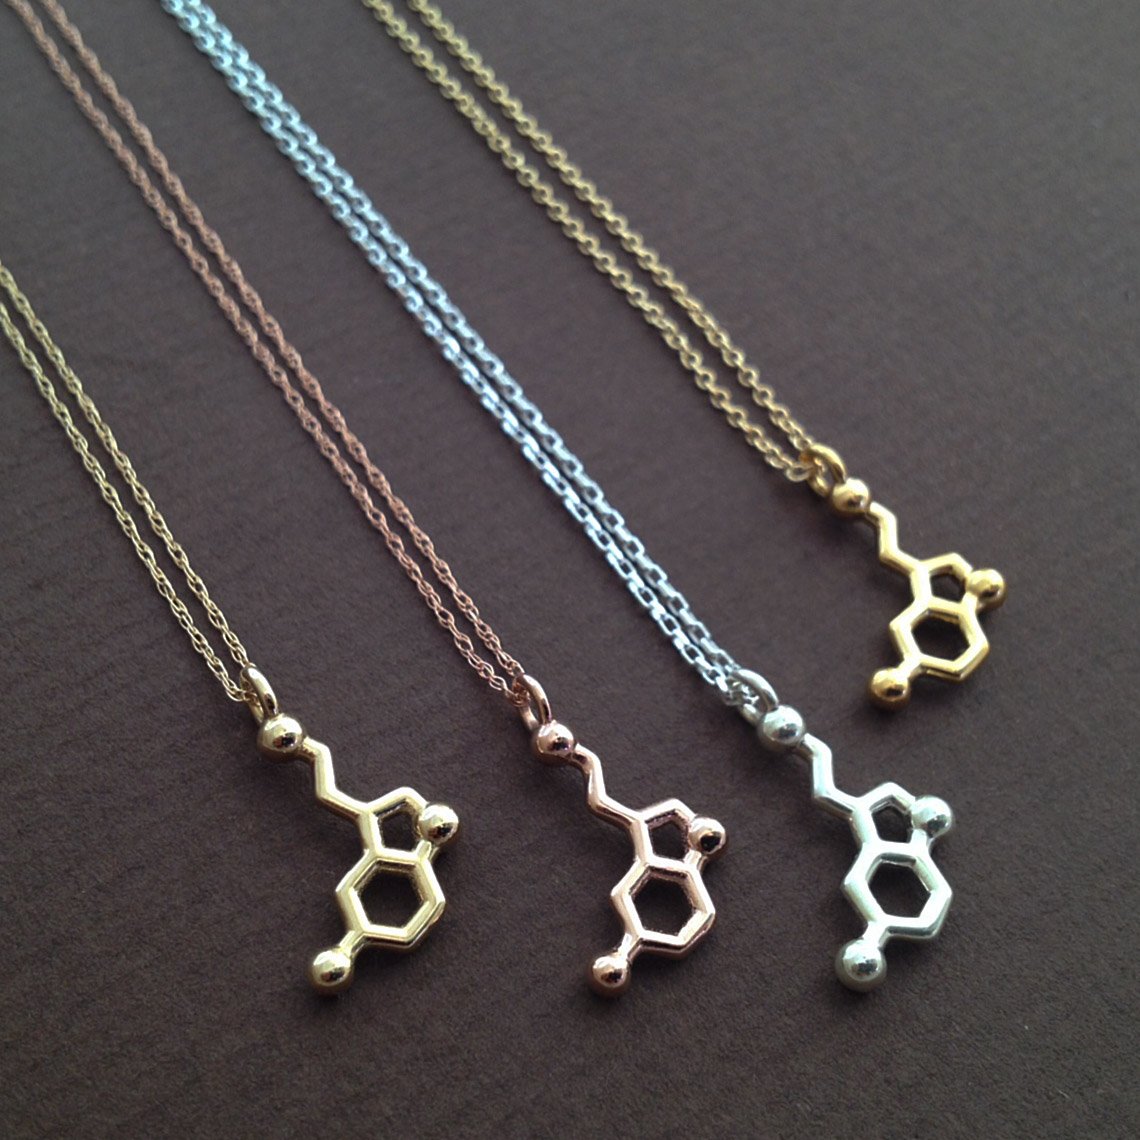 molecule necklaces | Made With Molecules